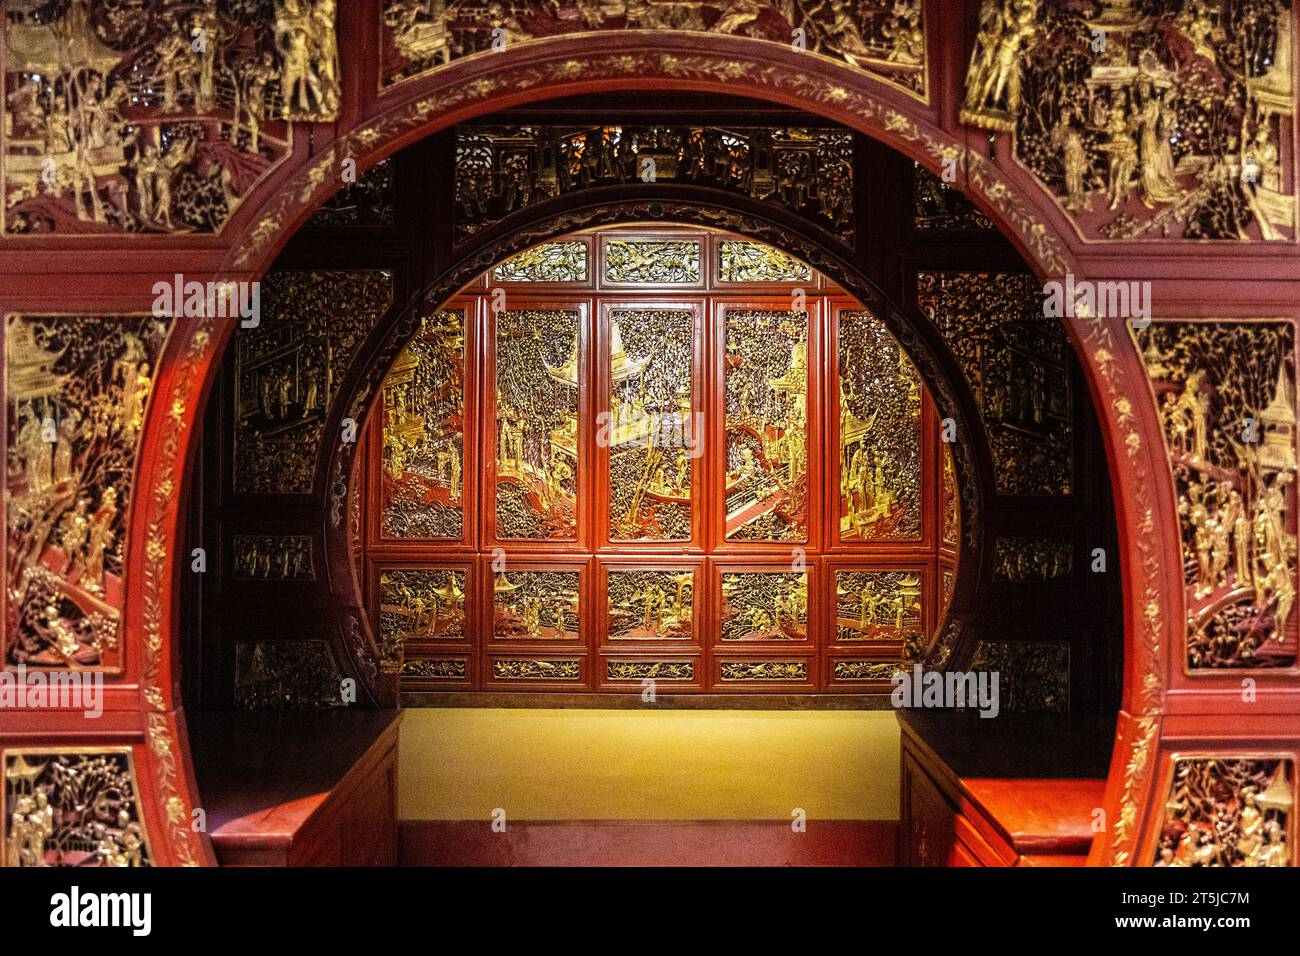 Letto da sposa cinese dorato con lacca lignea del XIX secolo (qian gong chuang), Musei reali di Arte e storia, Bruxelles, Belgio Foto Stock